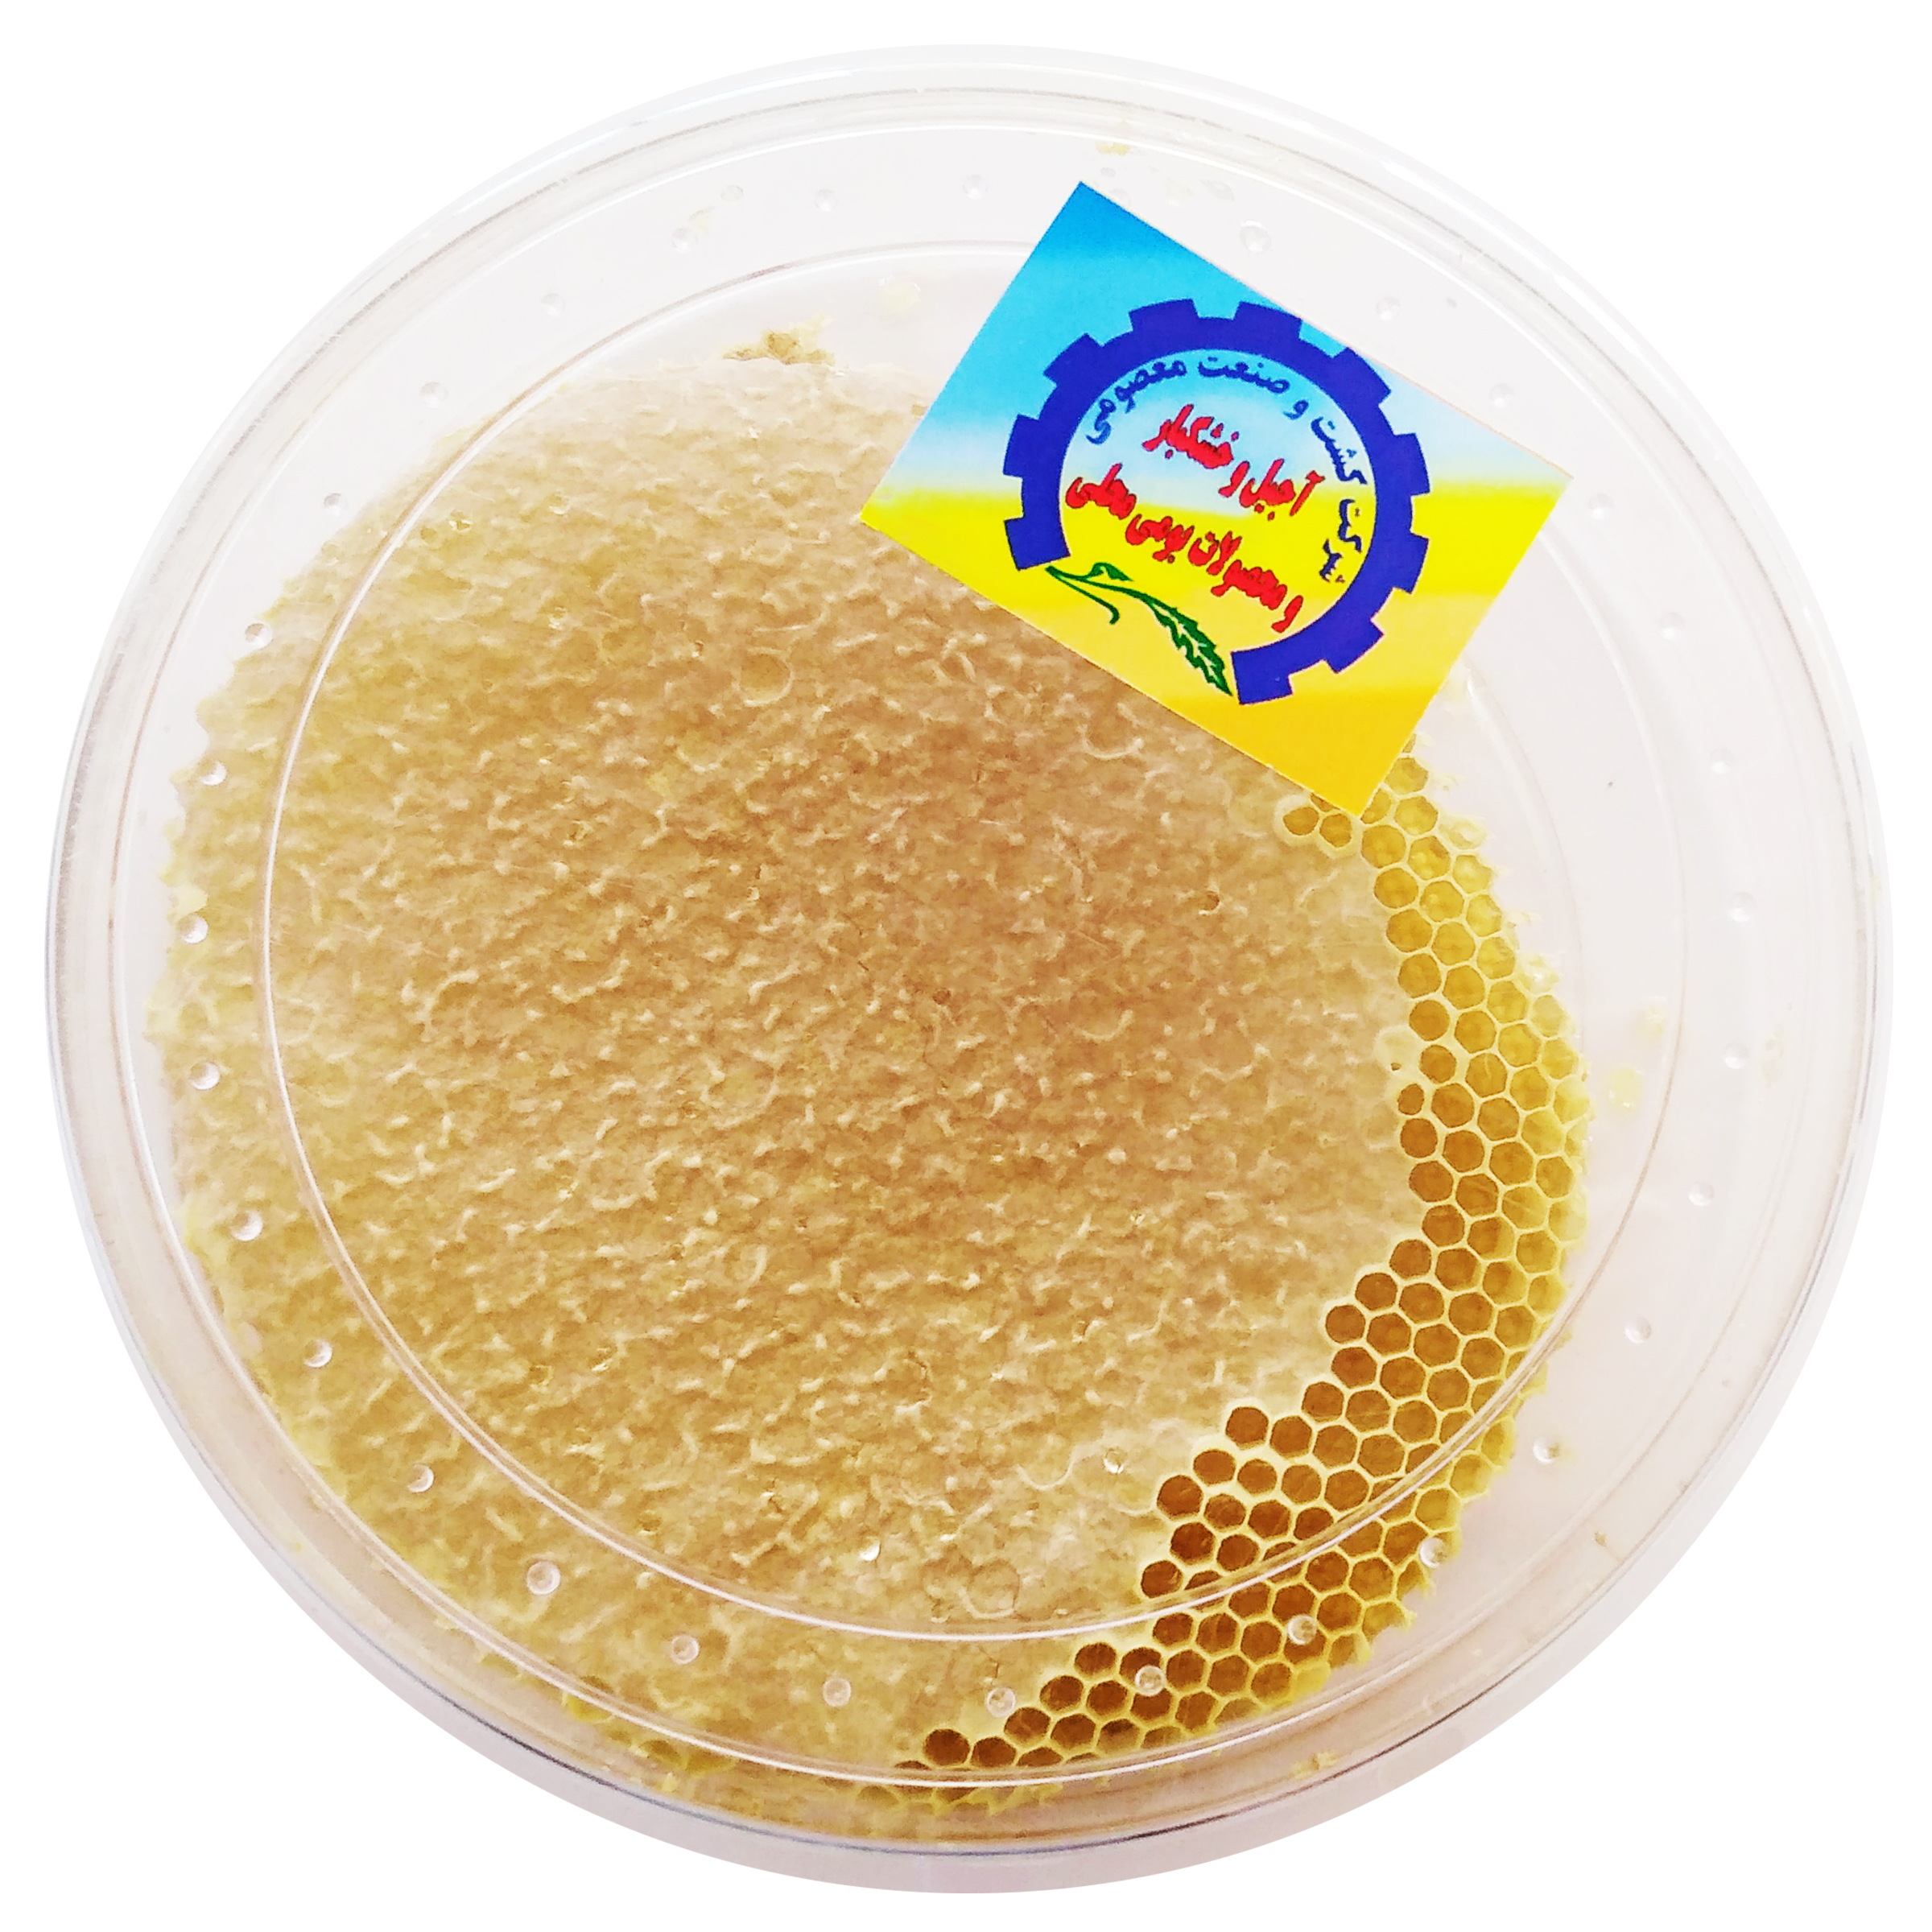 عسل با موم طبیعی شرکت کشت و صنعت معصومی - 600 گرم